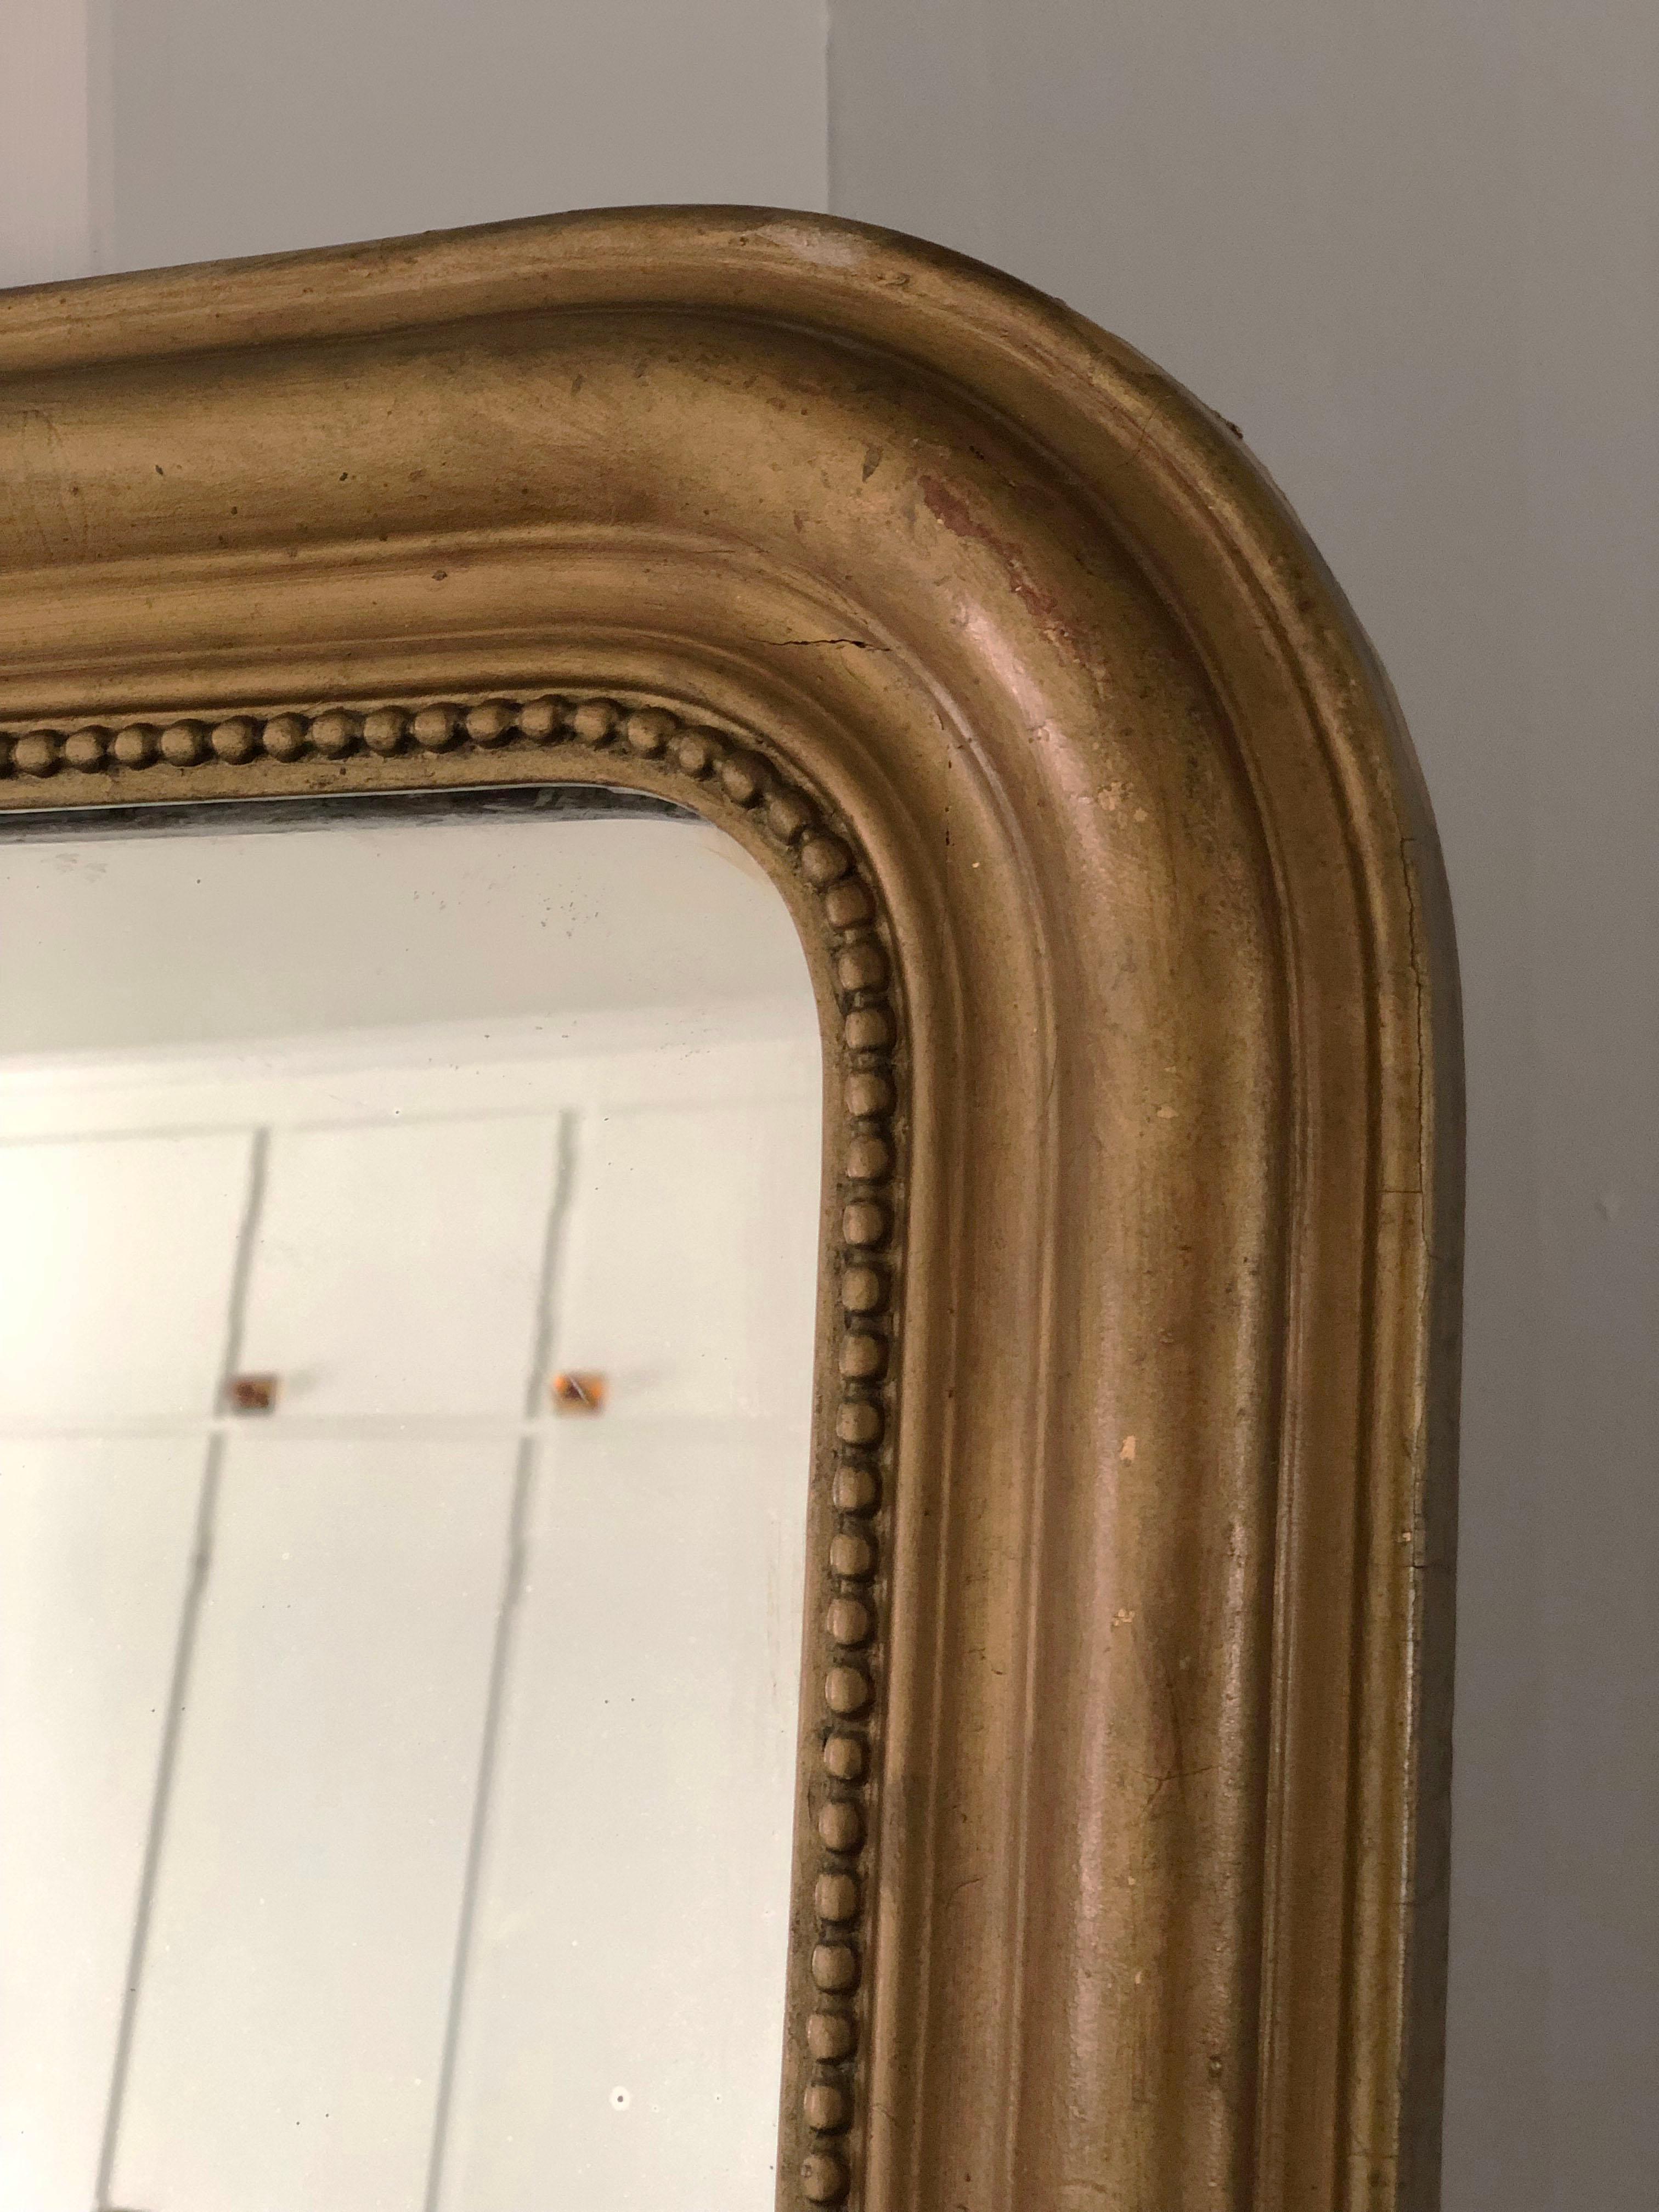 Miroir Louis Philippe ancien du 19ème siècle en bois doré avec une belle patine usée à la feuille d'or. Les coins supérieurs sont incurvés et le cadre est entouré d'une bordure perlée. Verre de mercure et dos d'origine.

Miroir magnifiquement patiné